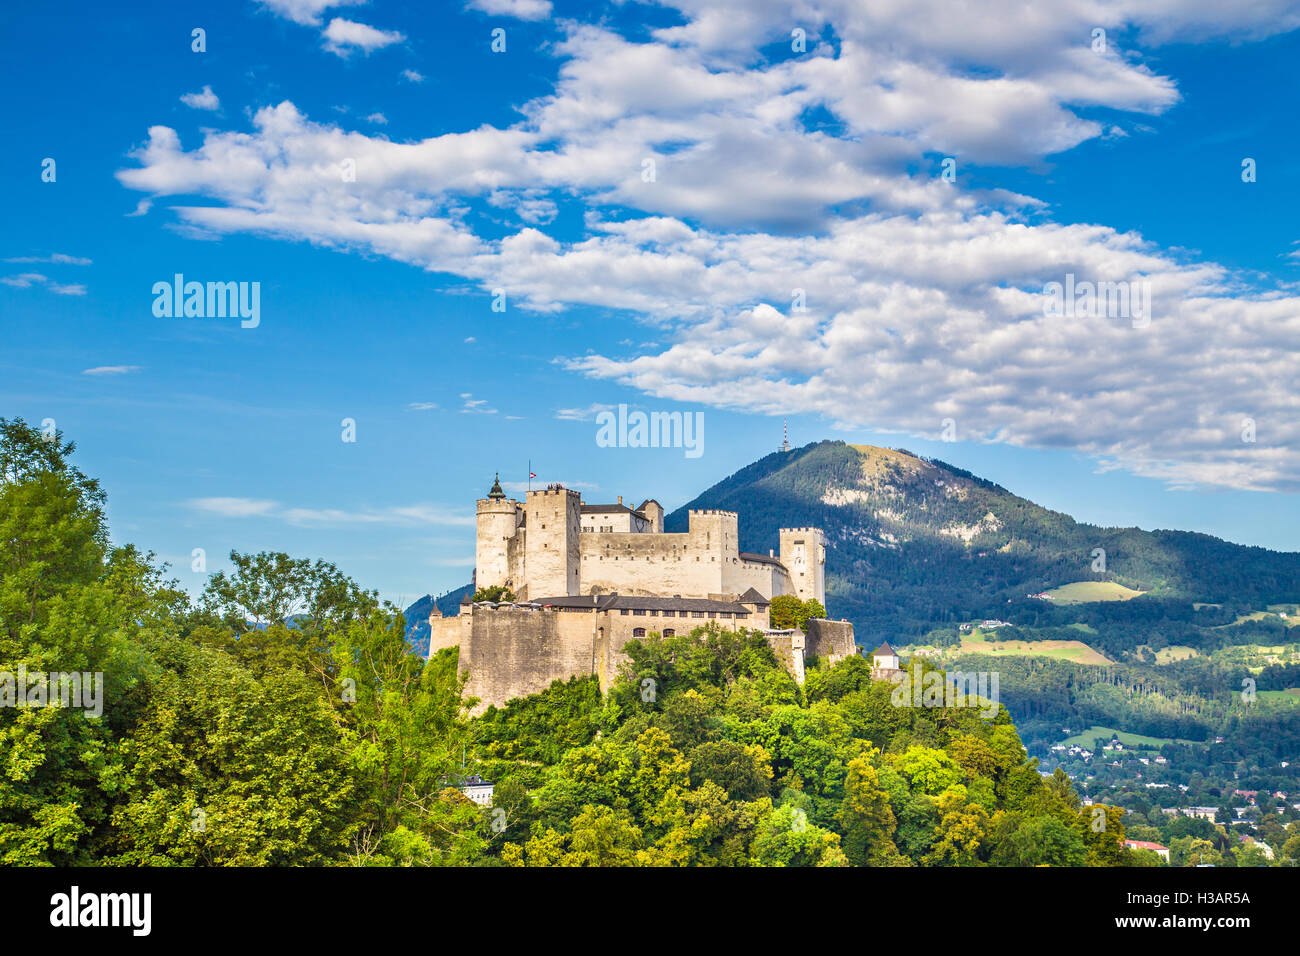 Vue aérienne de la célèbre forteresse de Hohensalzburg en été, Salzburg, Salzburger Land, Autriche Banque D'Images